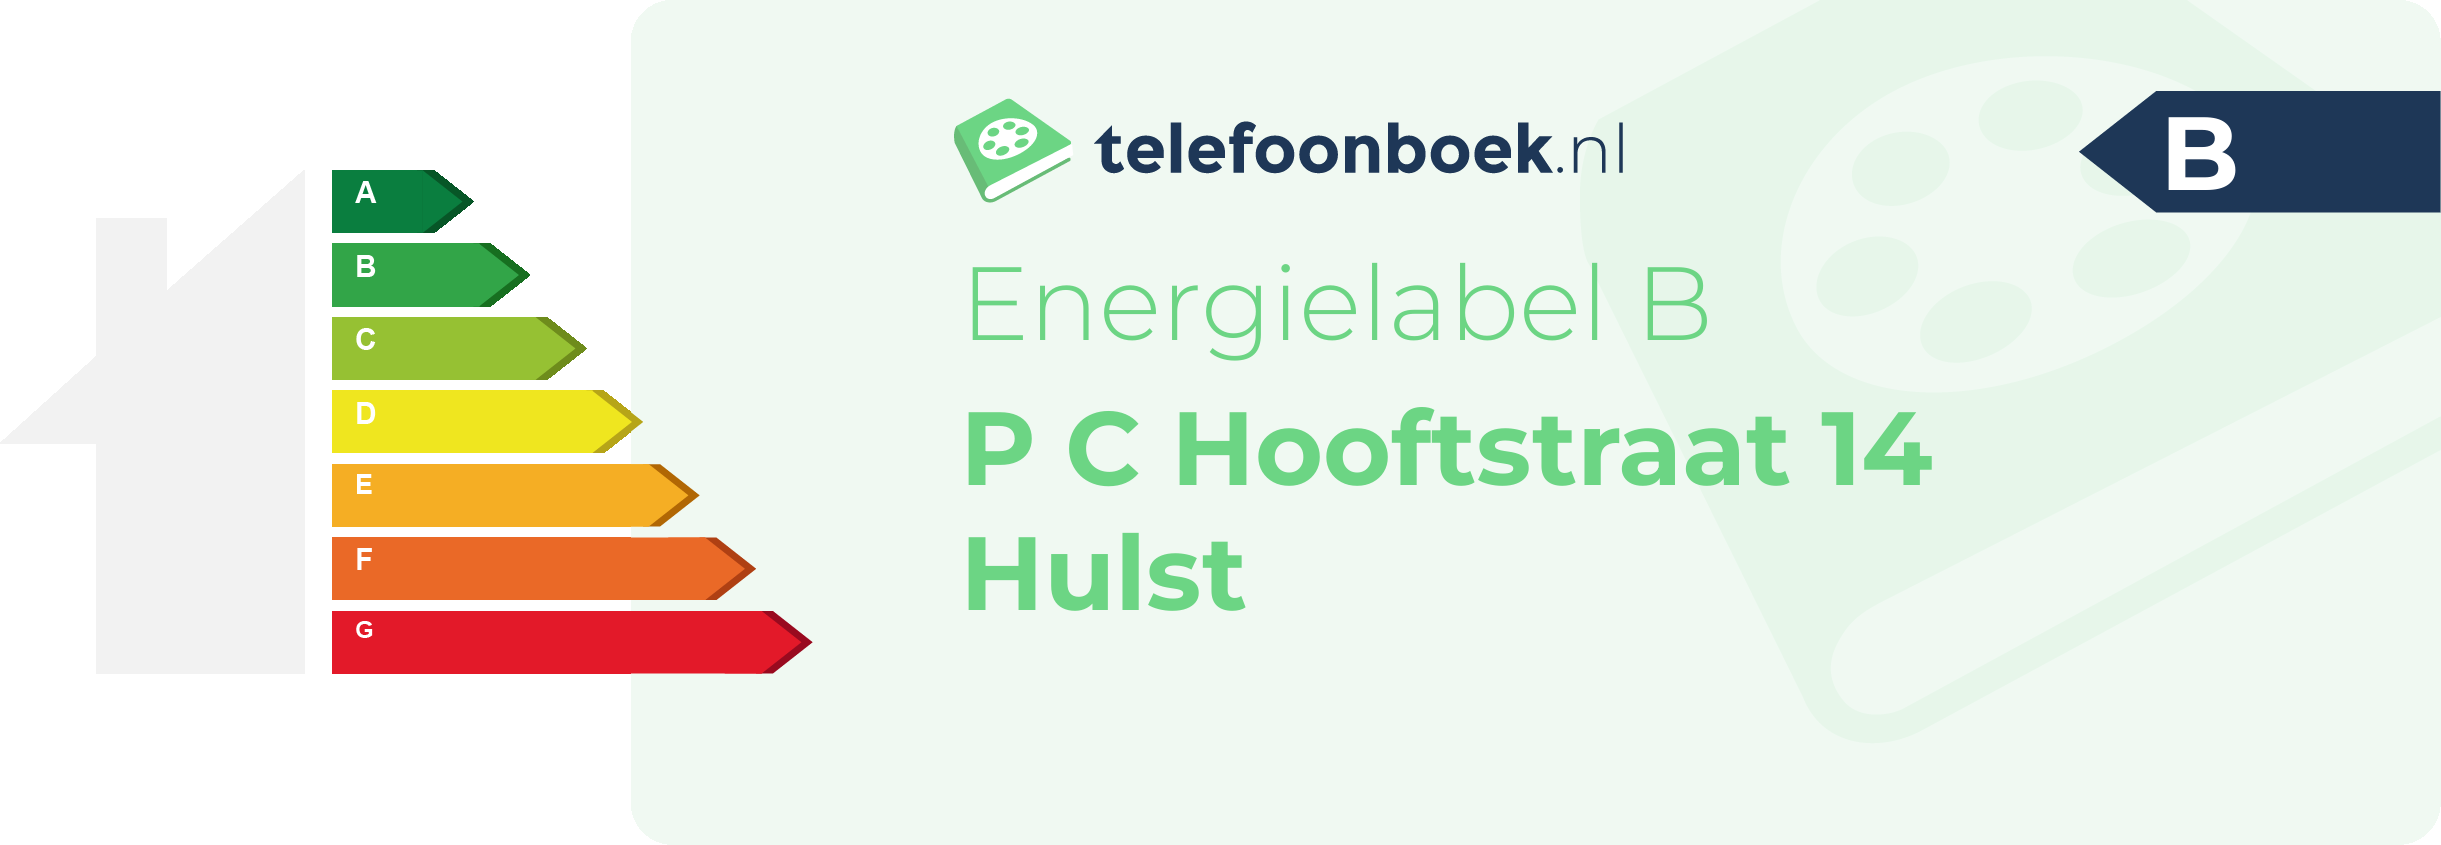 Energielabel P C Hooftstraat 14 Hulst